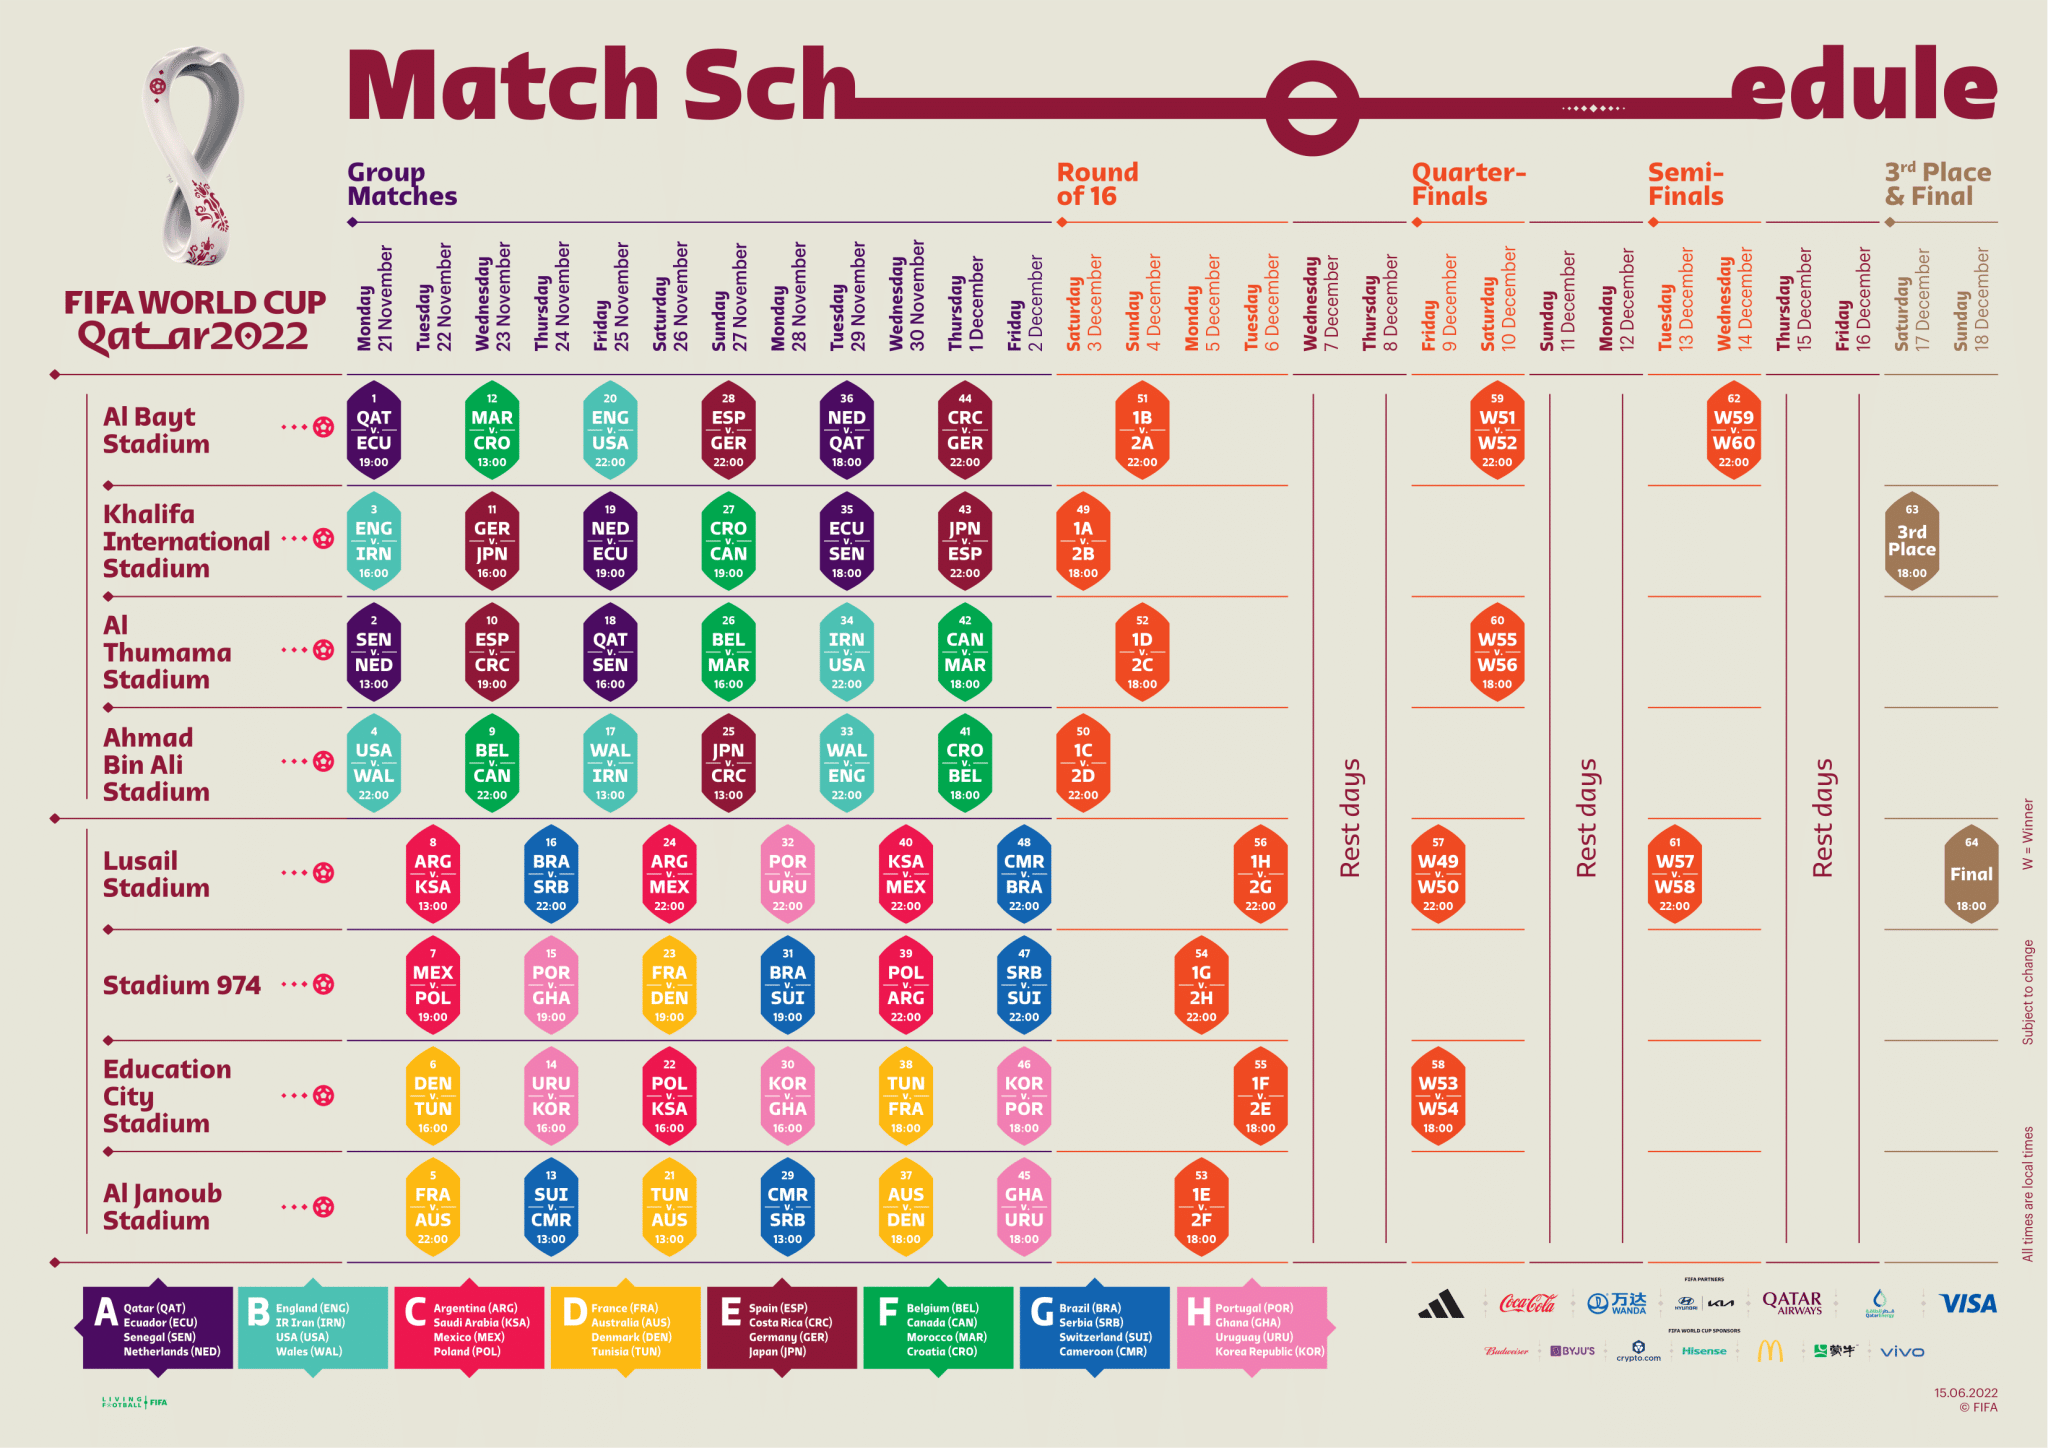 Calendário da Copa do Mundo 2022: datas e horários dos jogos +